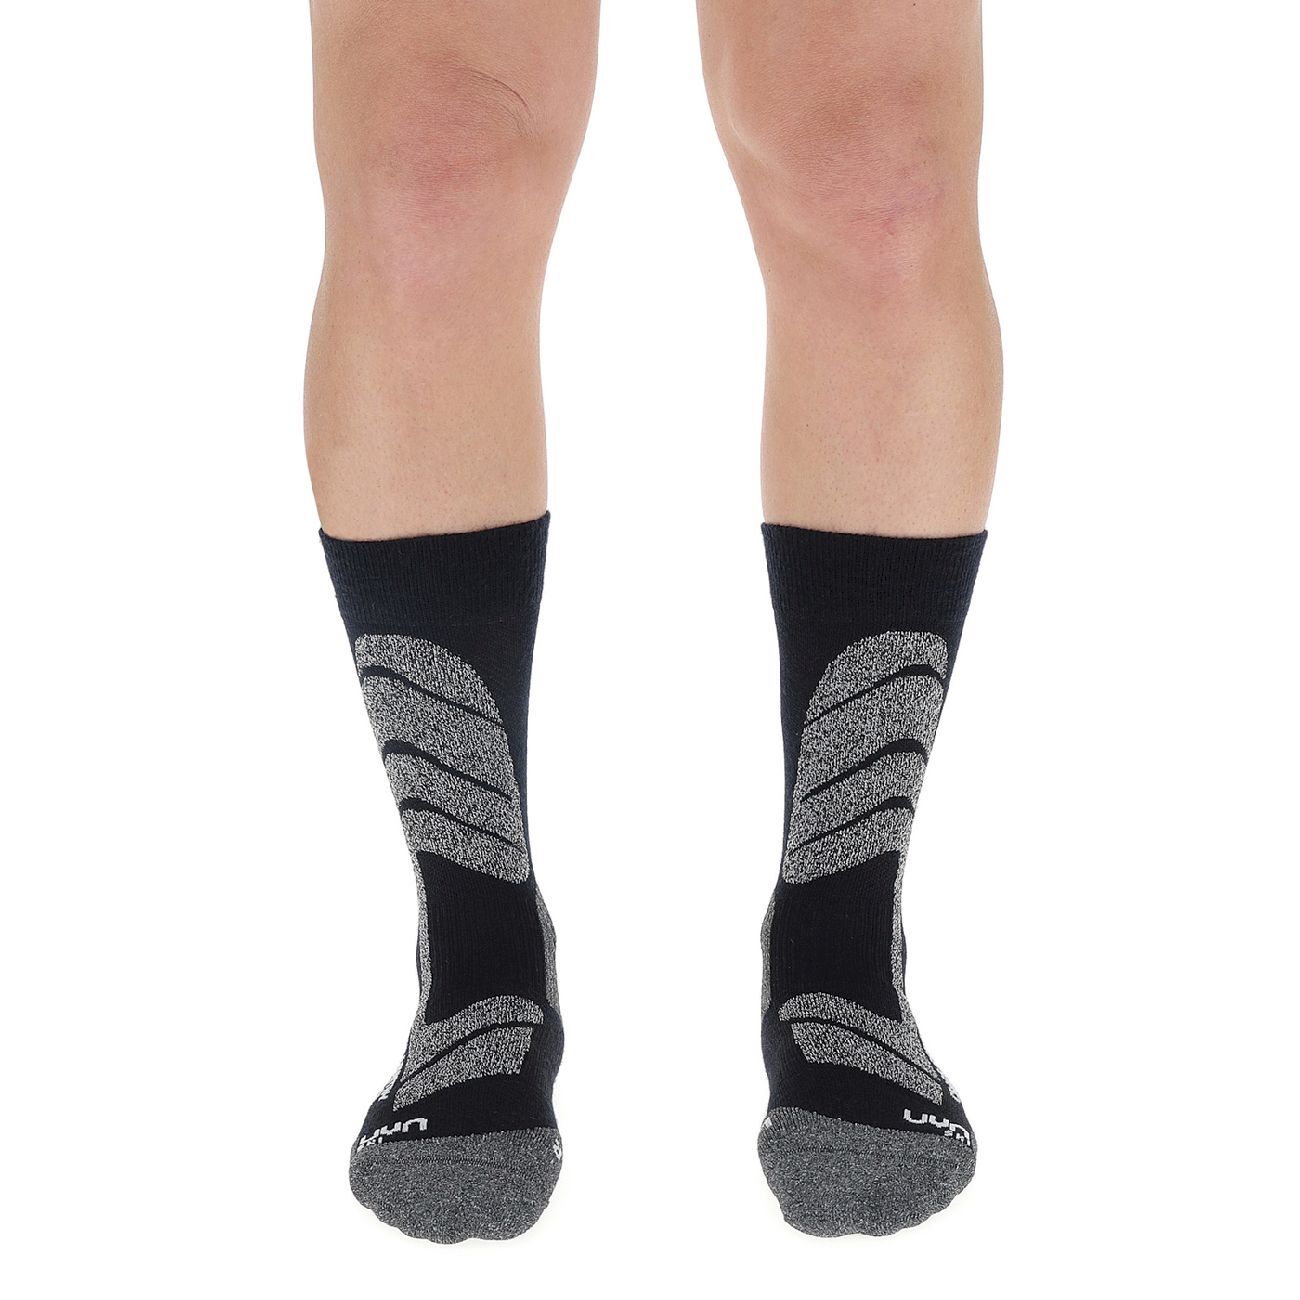 Uyn Ski Cross Country Socks - Ski socks - Men's